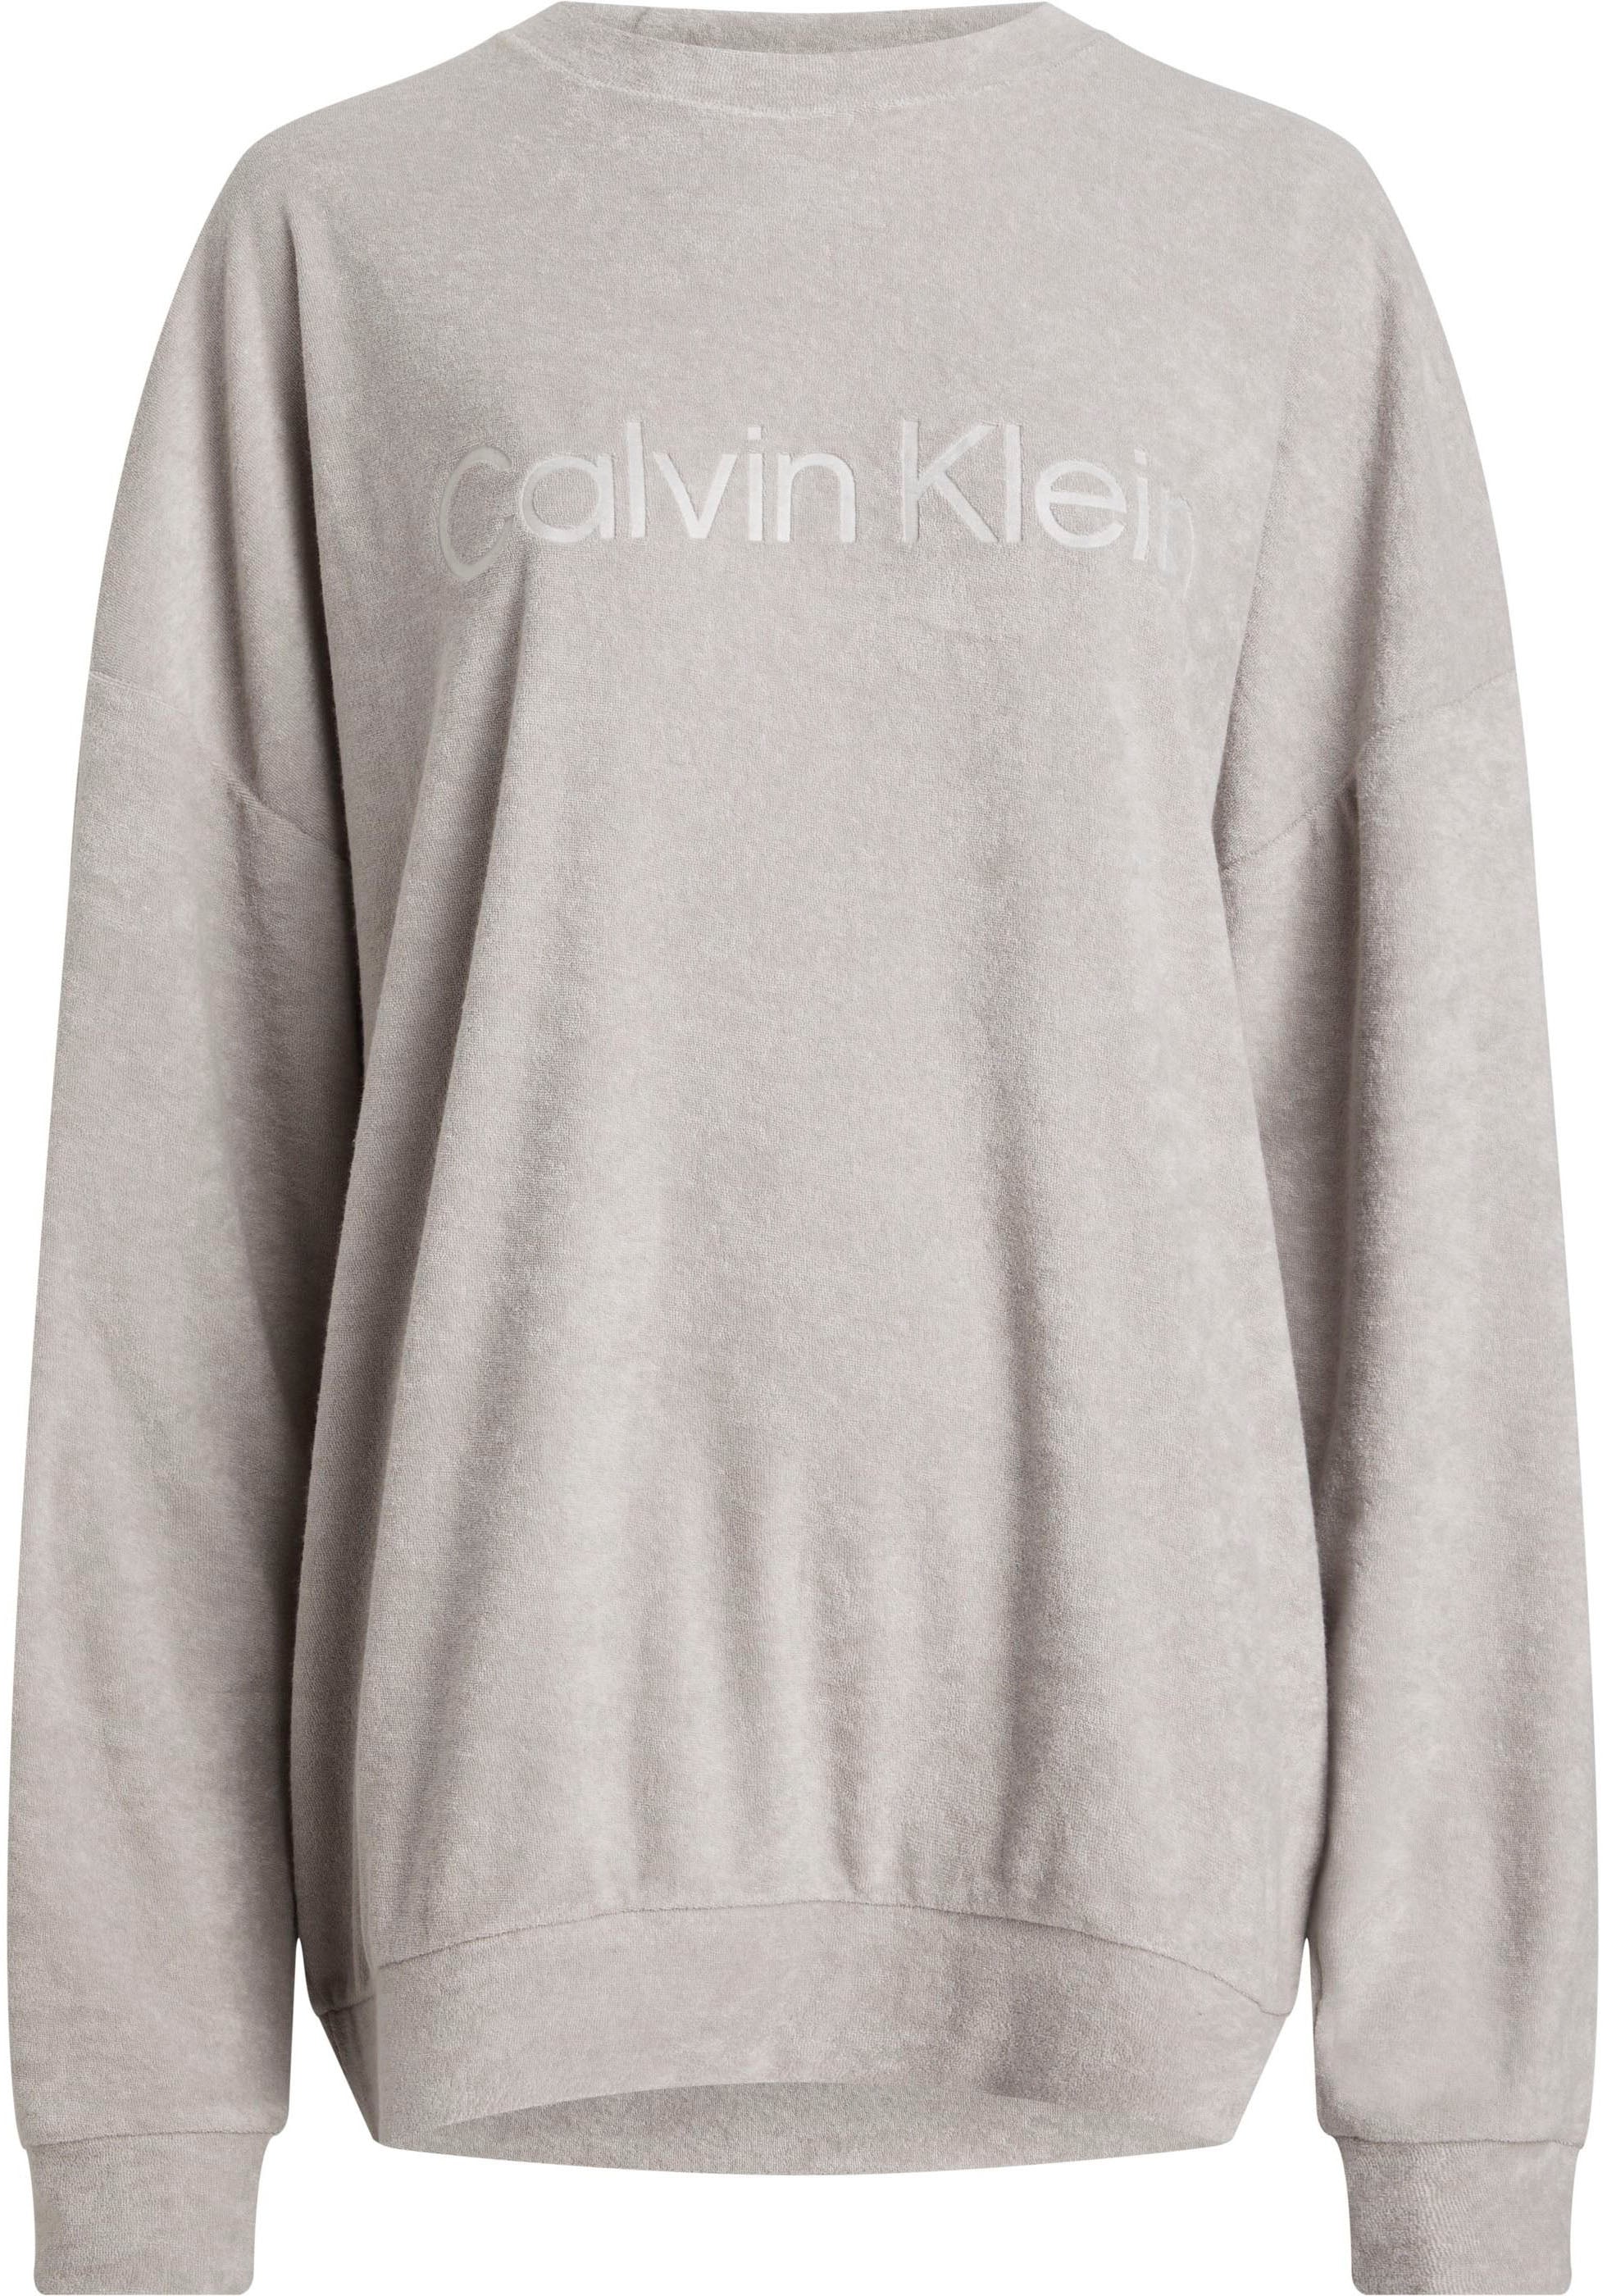 Calvin Klein Underwear - Sweatshirt